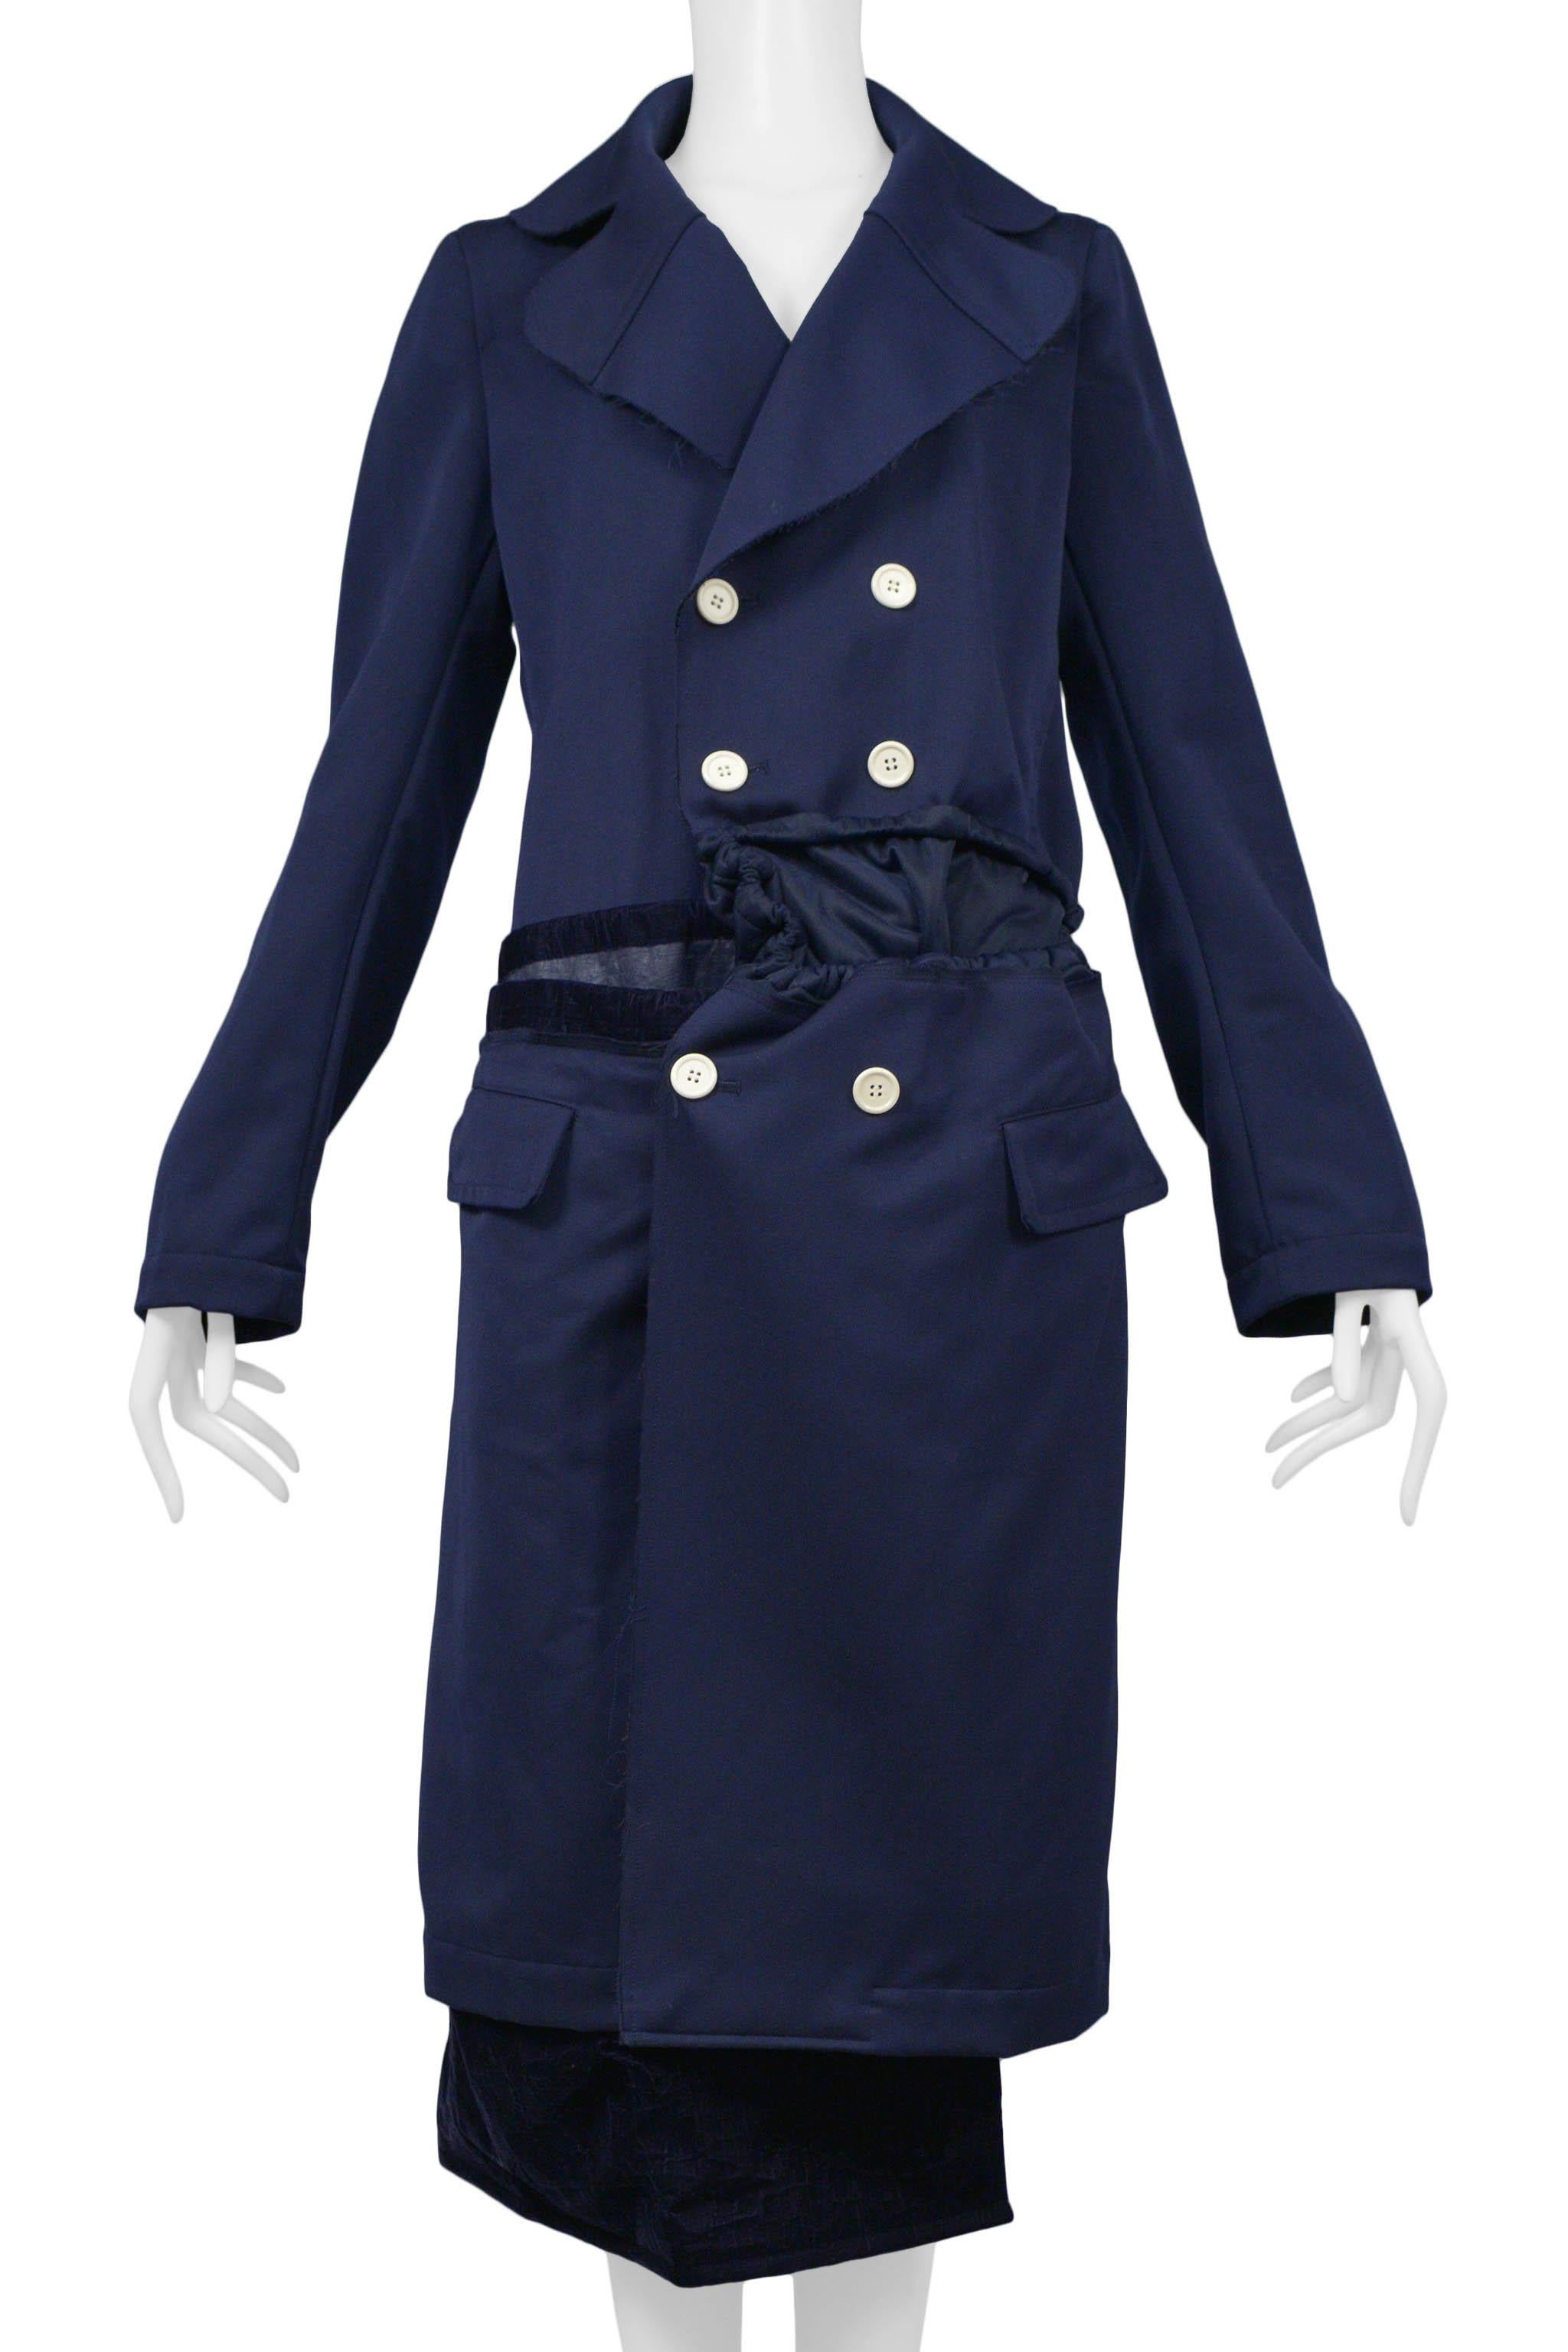 Resurrection Vintage freut sich, einen blauen Vintage-Mantel von Comme des Garcons anbieten zu können. Der Mantel ist ein Zweireiher mit weißen Knöpfen, breitem Revers, Kordelzügen sowie Samteinsätzen und -besätzen.

Comme Des Garcons
Größe: Mittel